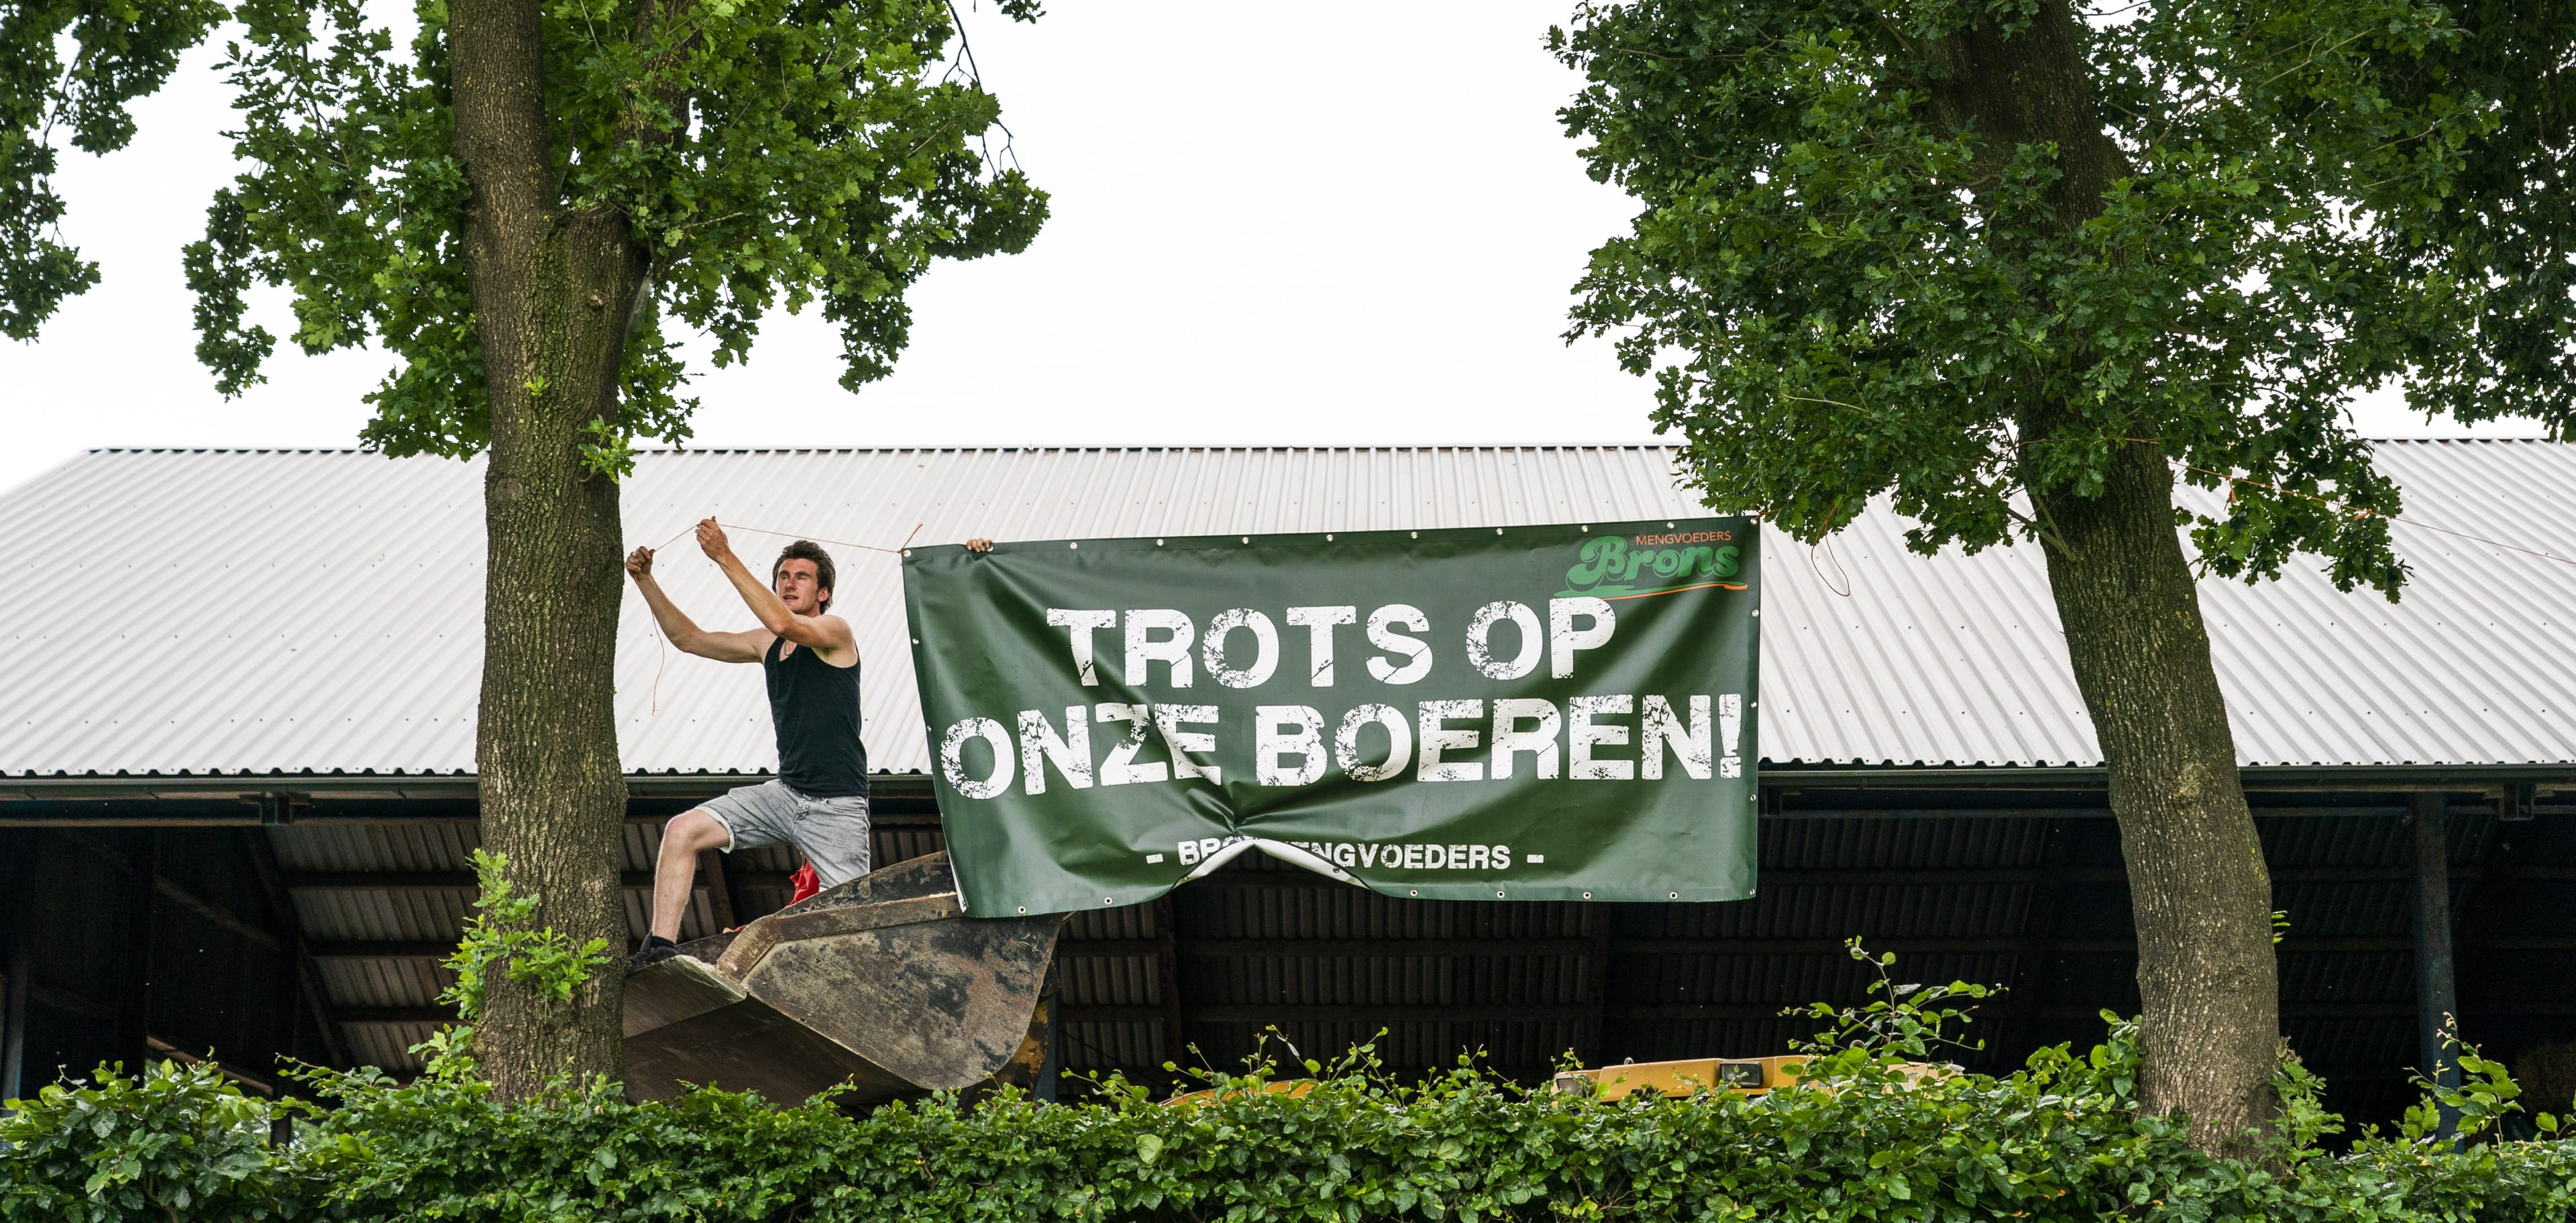 Gelderse dorpje Stroe verwacht duizenden boeren voor stikstofprotest: 'De laatste vredige actie'